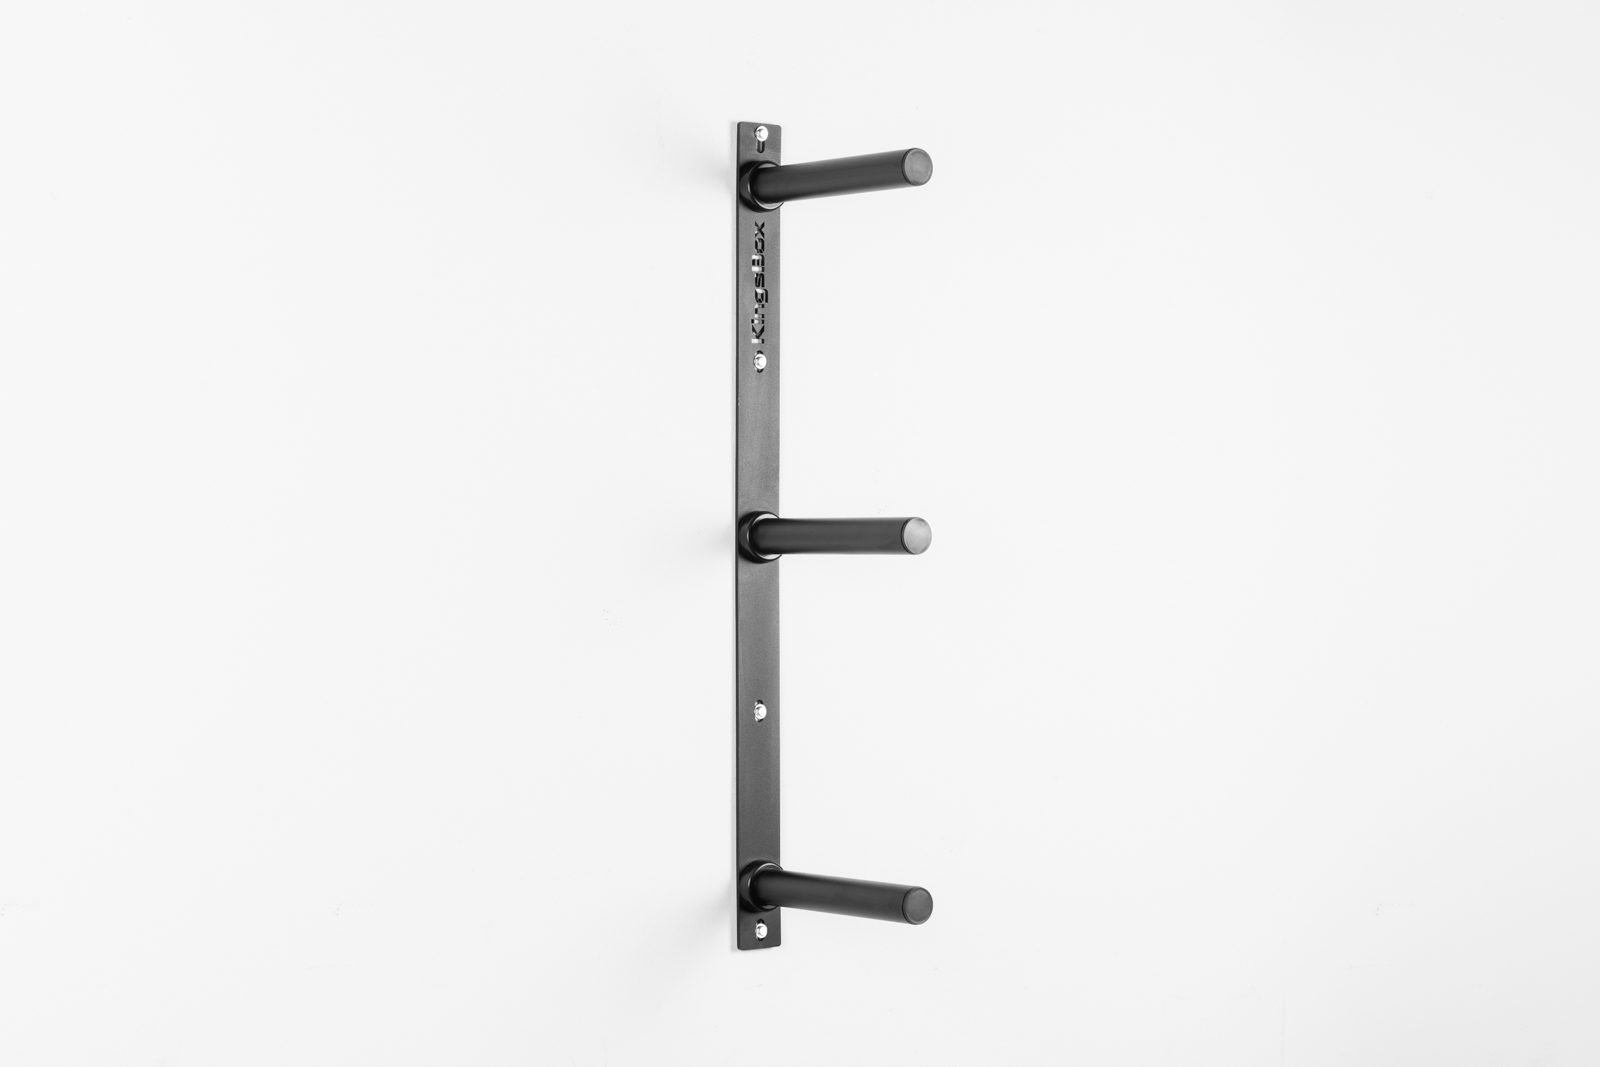 KingsBox Wall / Upright Plate Storage